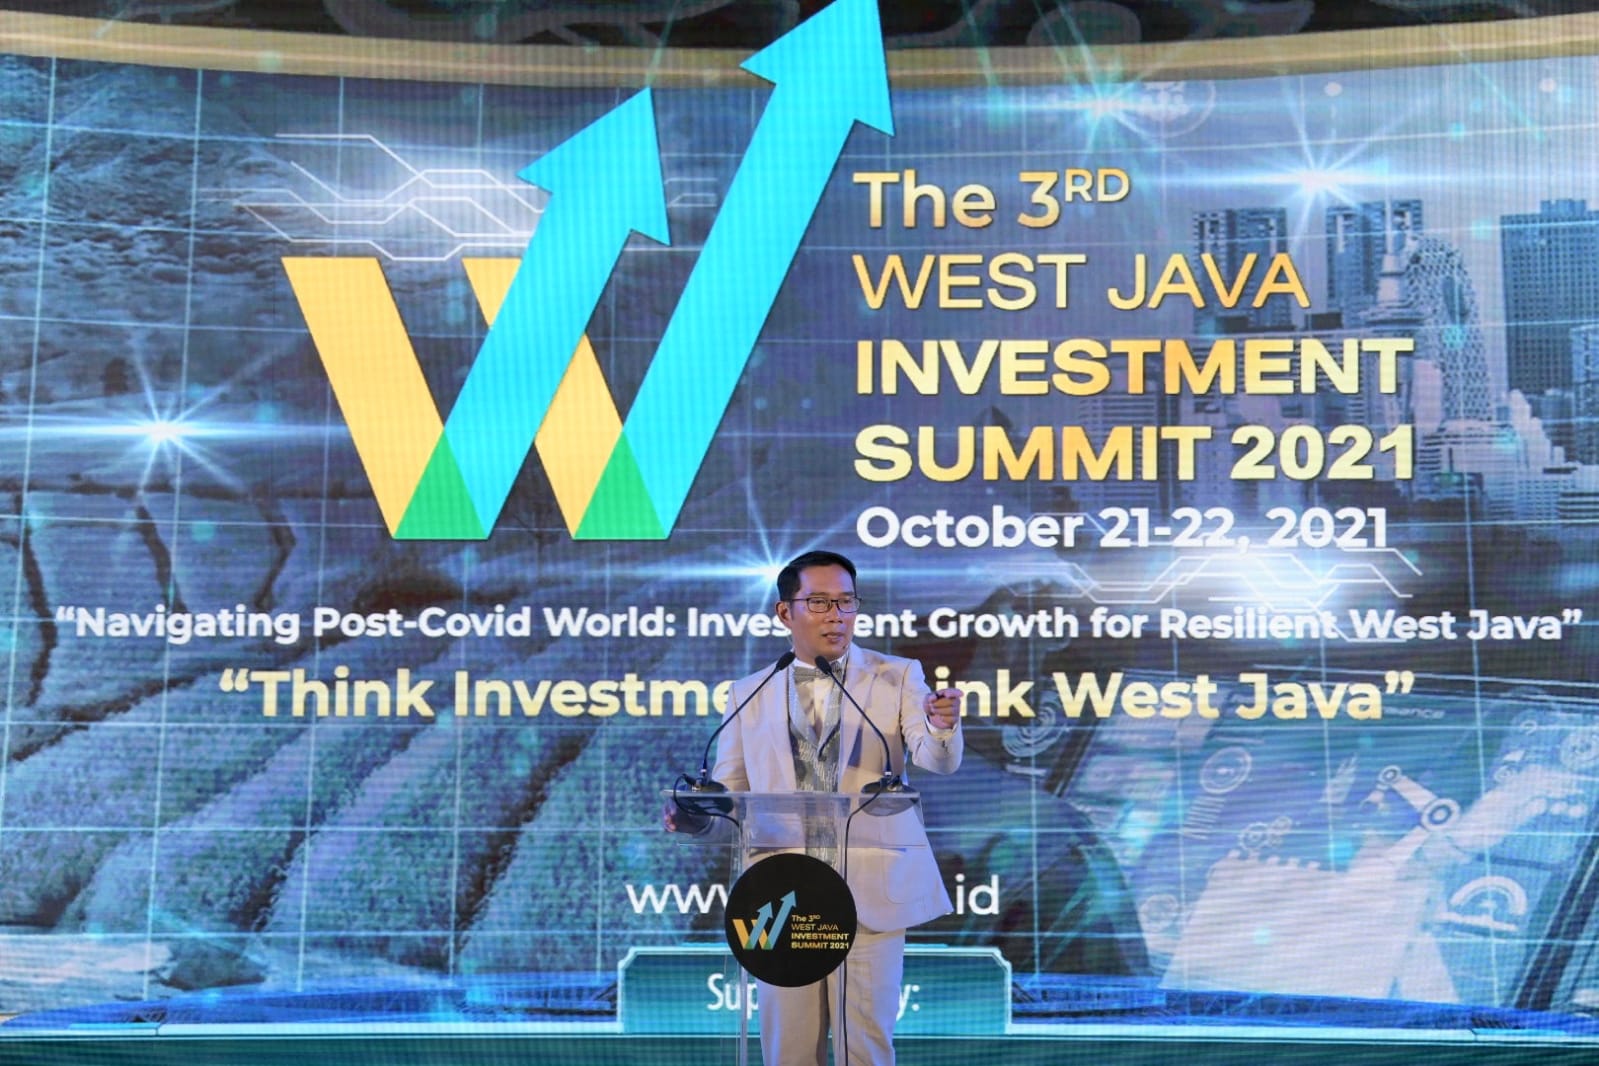 West Java Investment Summit 2021 Resmi Dibuka: Tawarkan 31 Proyek, 33 MoU, Undang 17 Negara